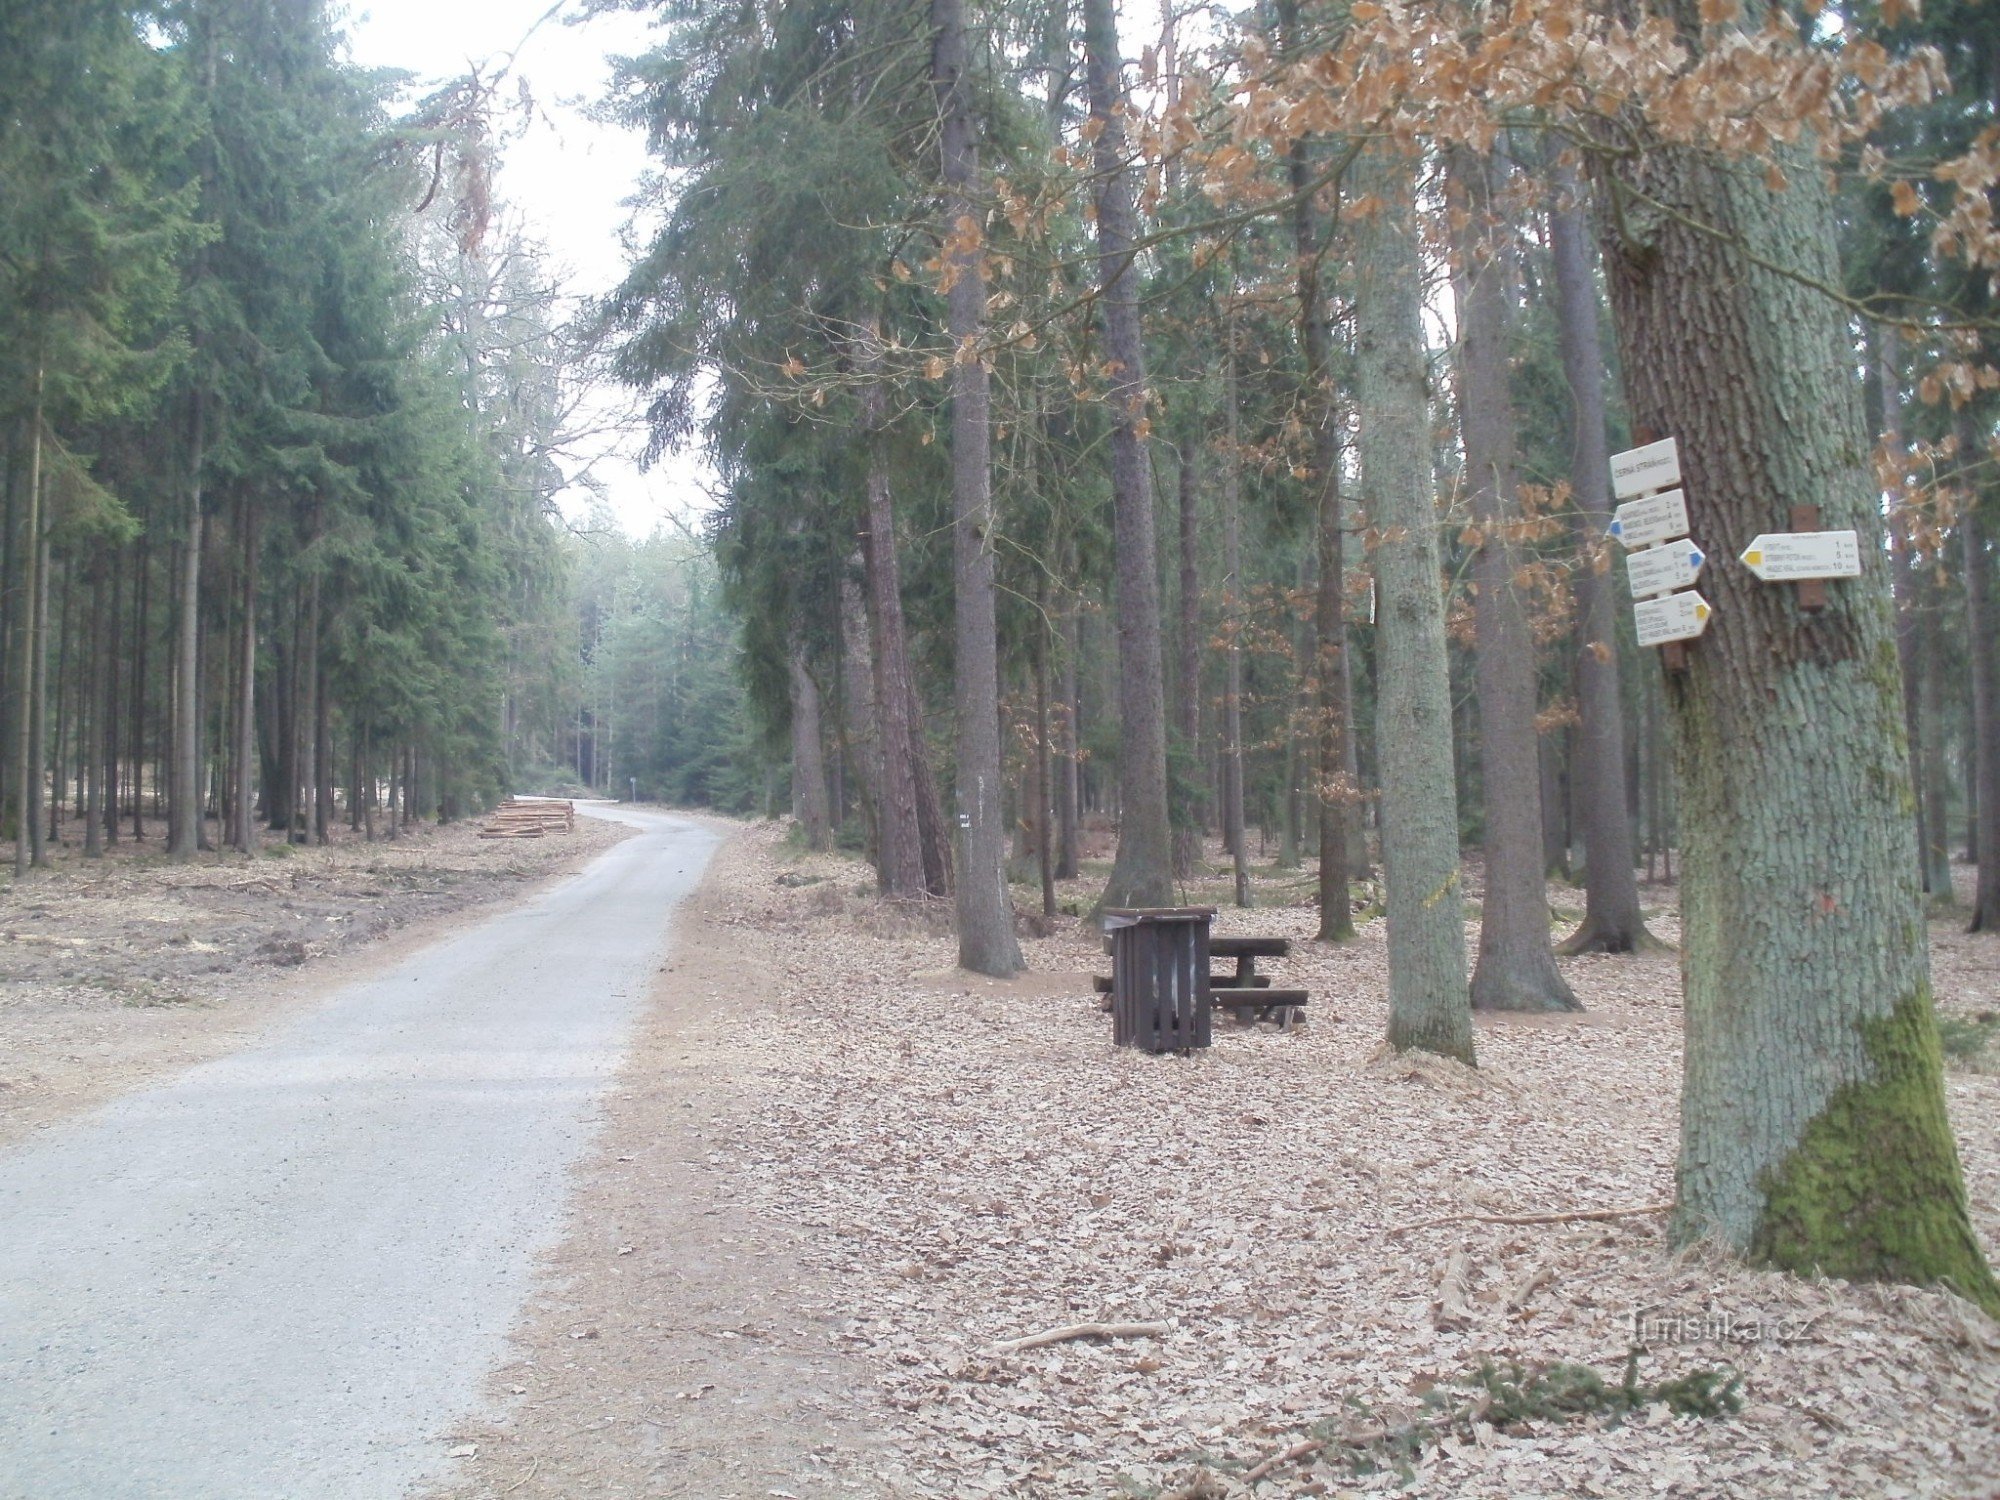 turističko raskrižje Černá stráň - Hradecké lesy